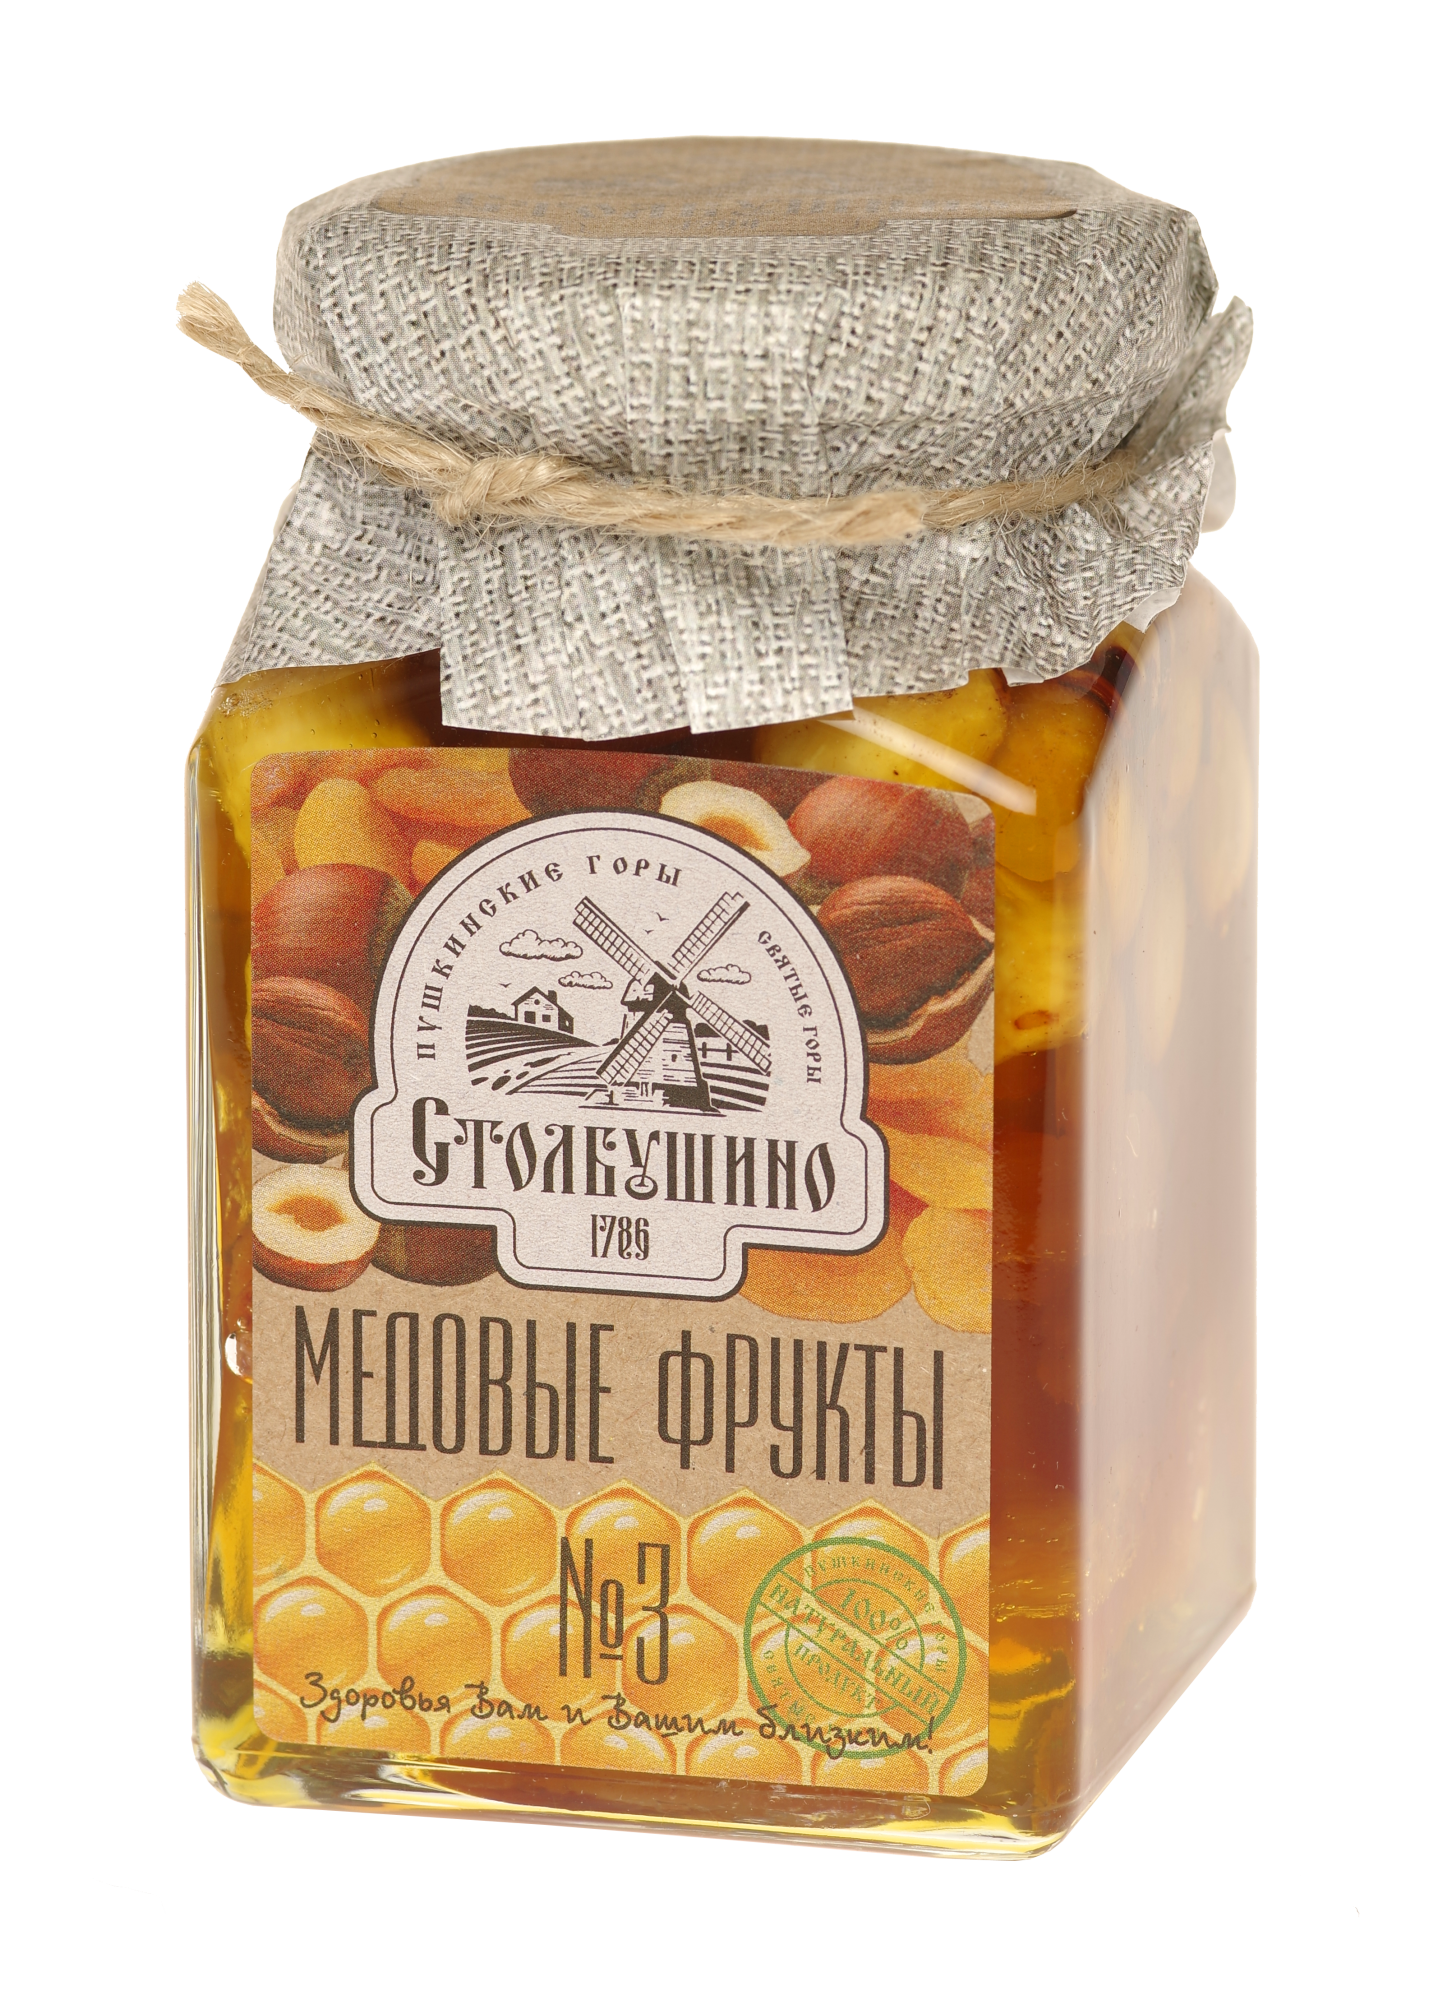 Honigfrucht. Getrocknete Früchte und Nüsse in Honig "Stolbushinsky" (Honig, getrocknete Aprikosen, Haselnüsse) Nr. 3